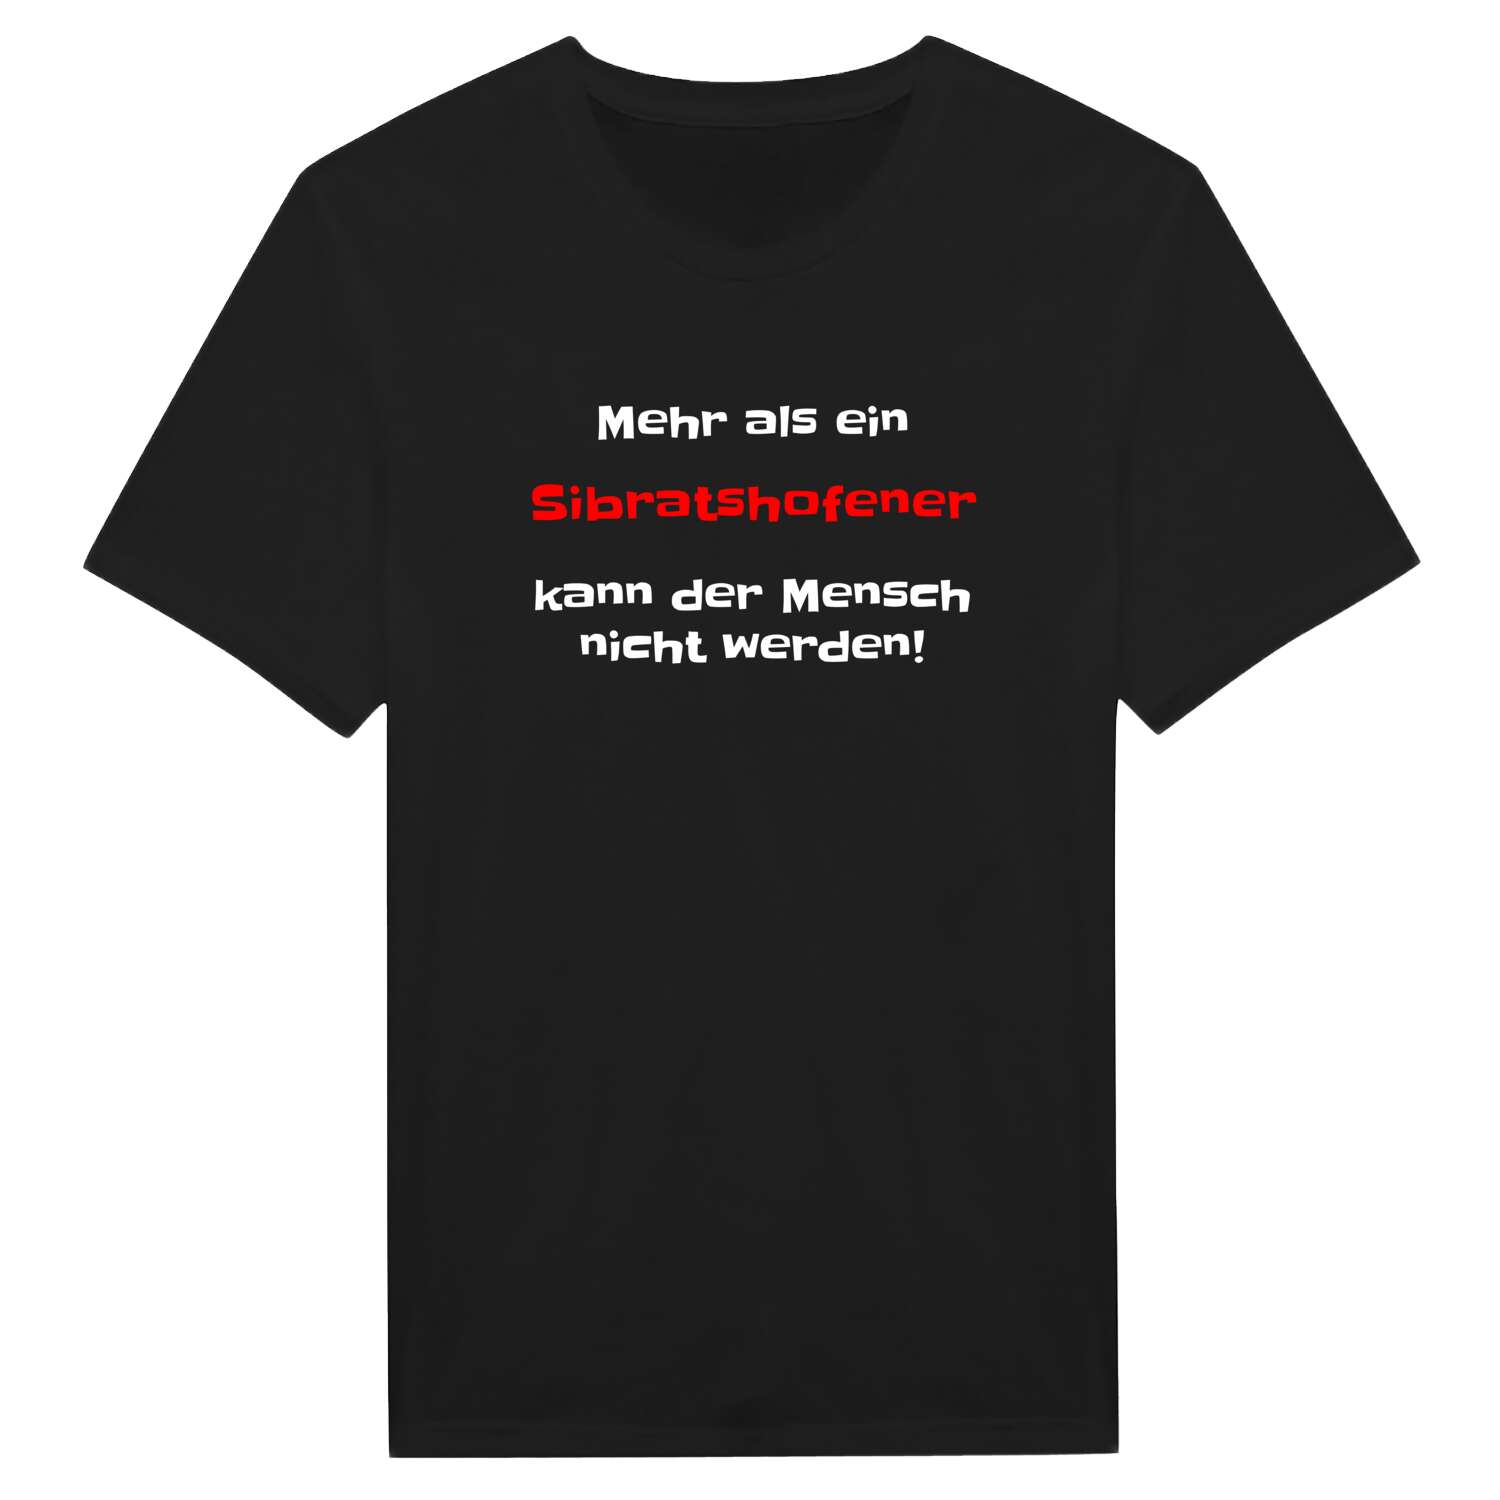 Sibratshofen T-Shirt »Mehr als ein«